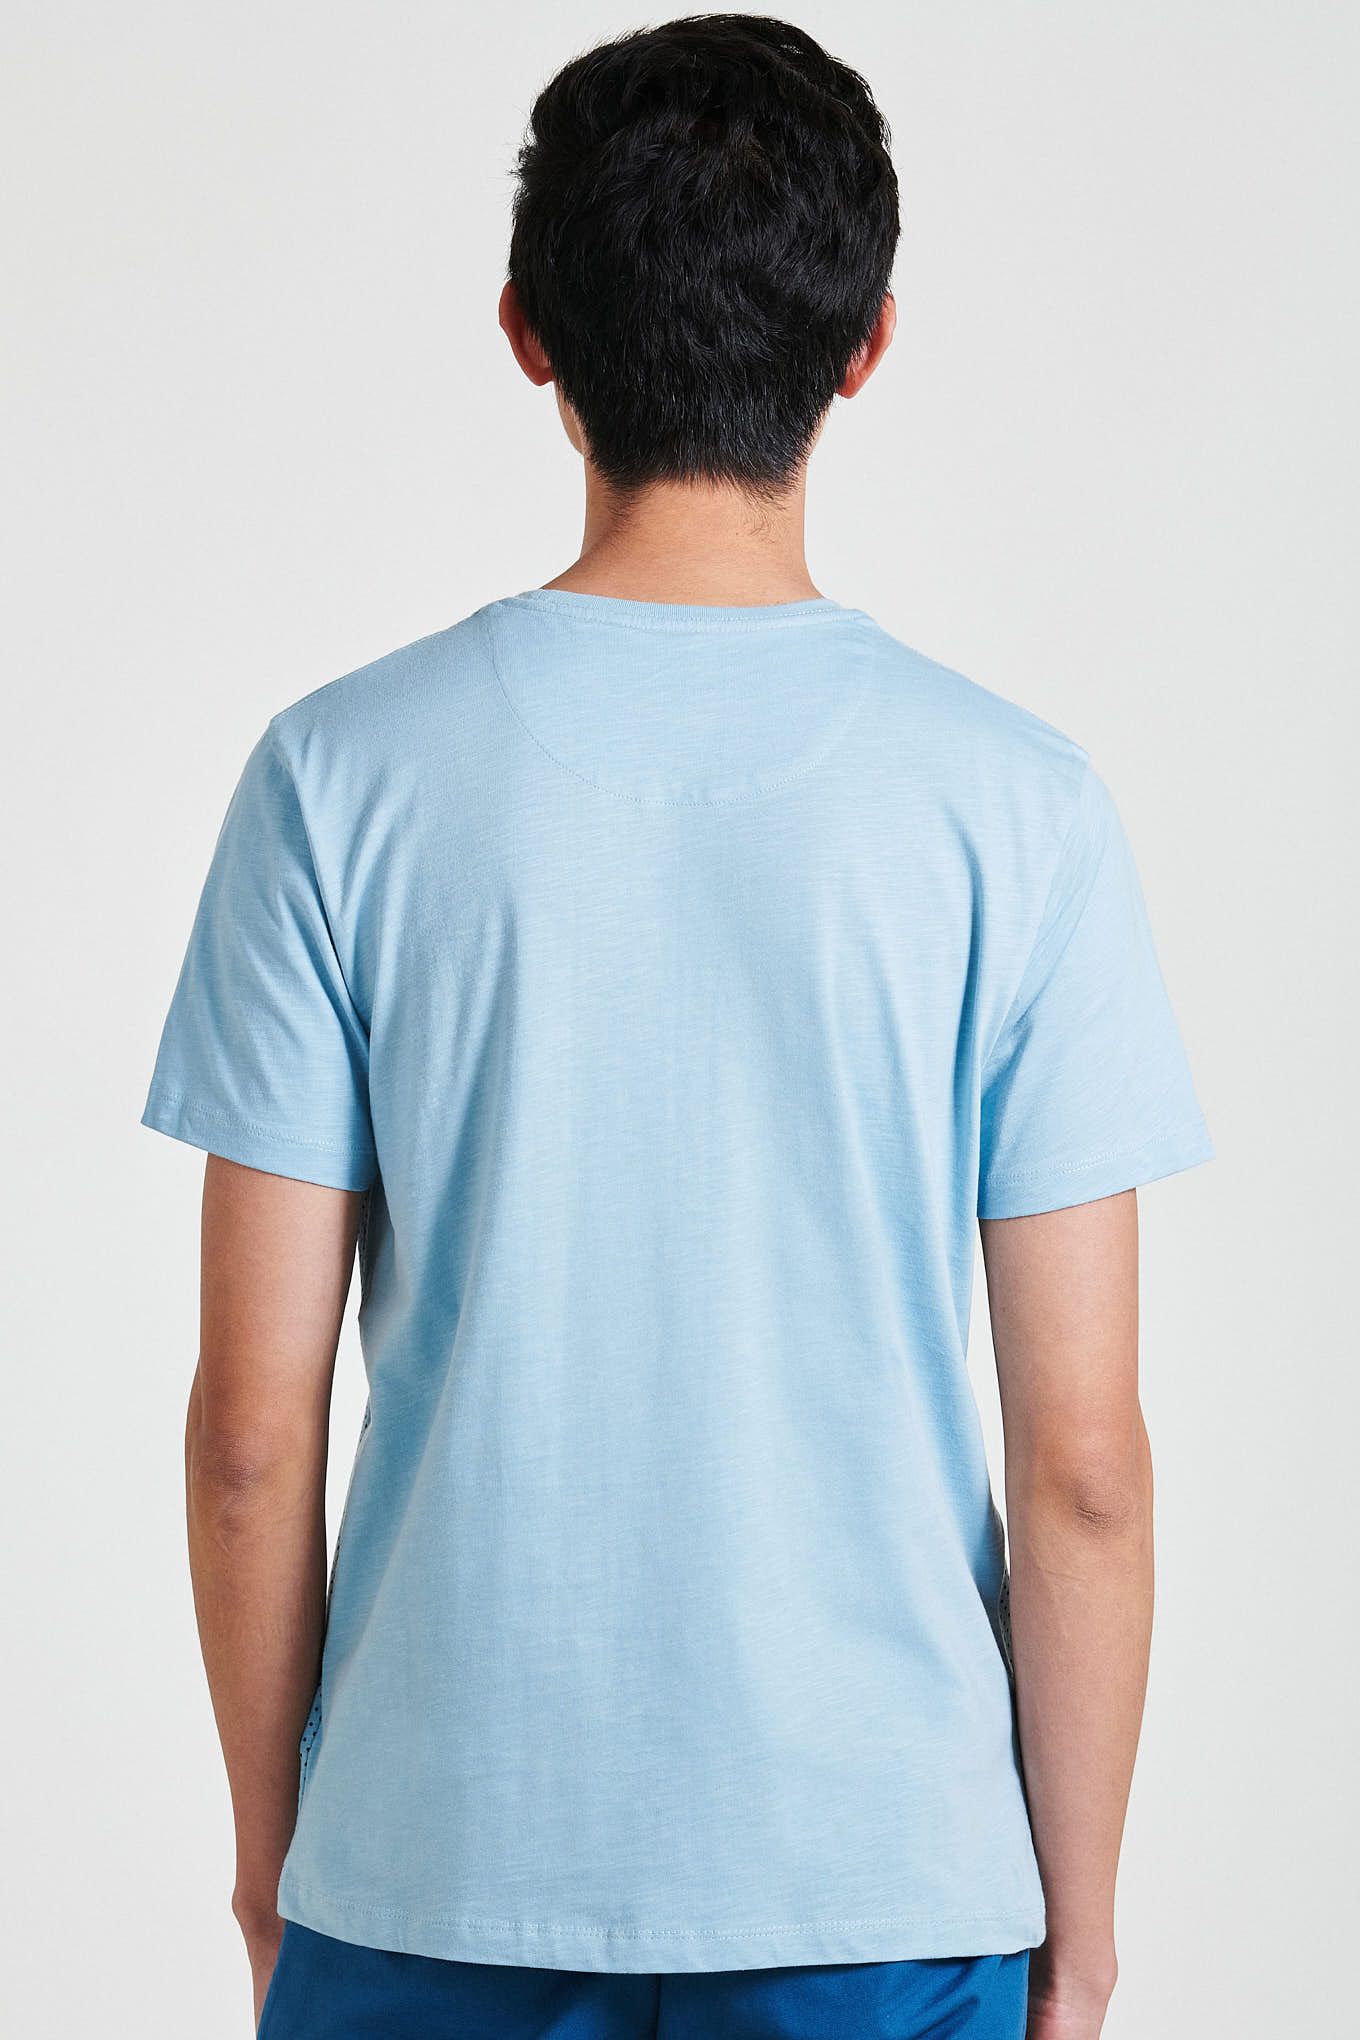 T-Shirt Light Blue Casual Man